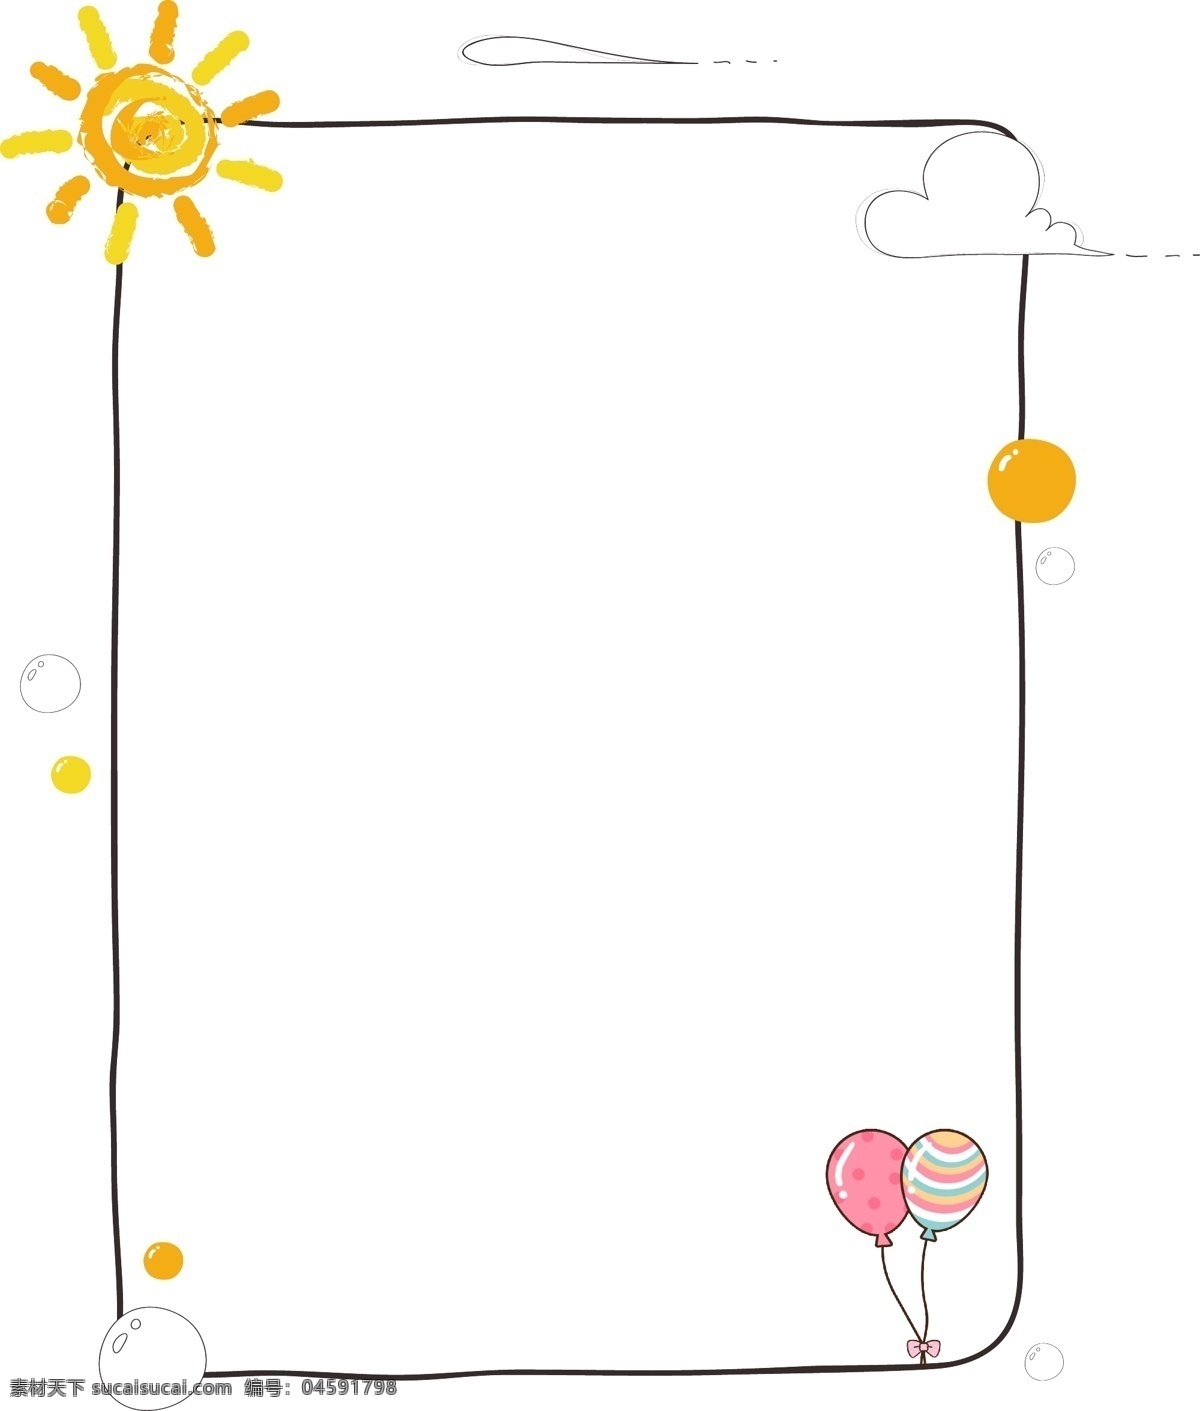 卡通 太阳 气球 边框 矢量图 卡通边框 黑色边框 文案背景 活动边框 红色气球 金色太阳 夏季边框